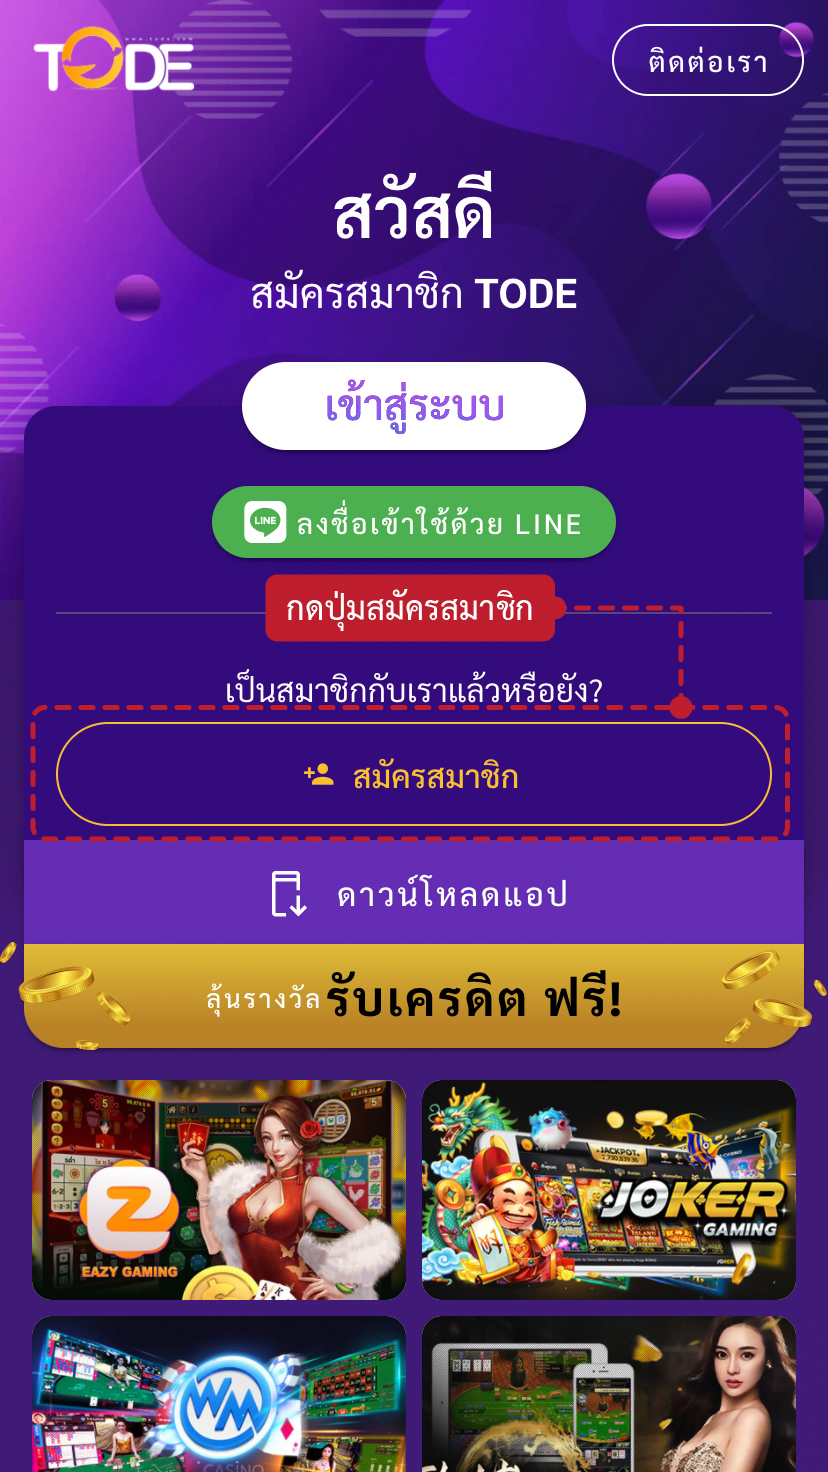 ขั้นตอนวิธีการสมัครสมาชิก MOBET เว็บพนันออนไลน์อันดับ 1 ของประเทศไทย